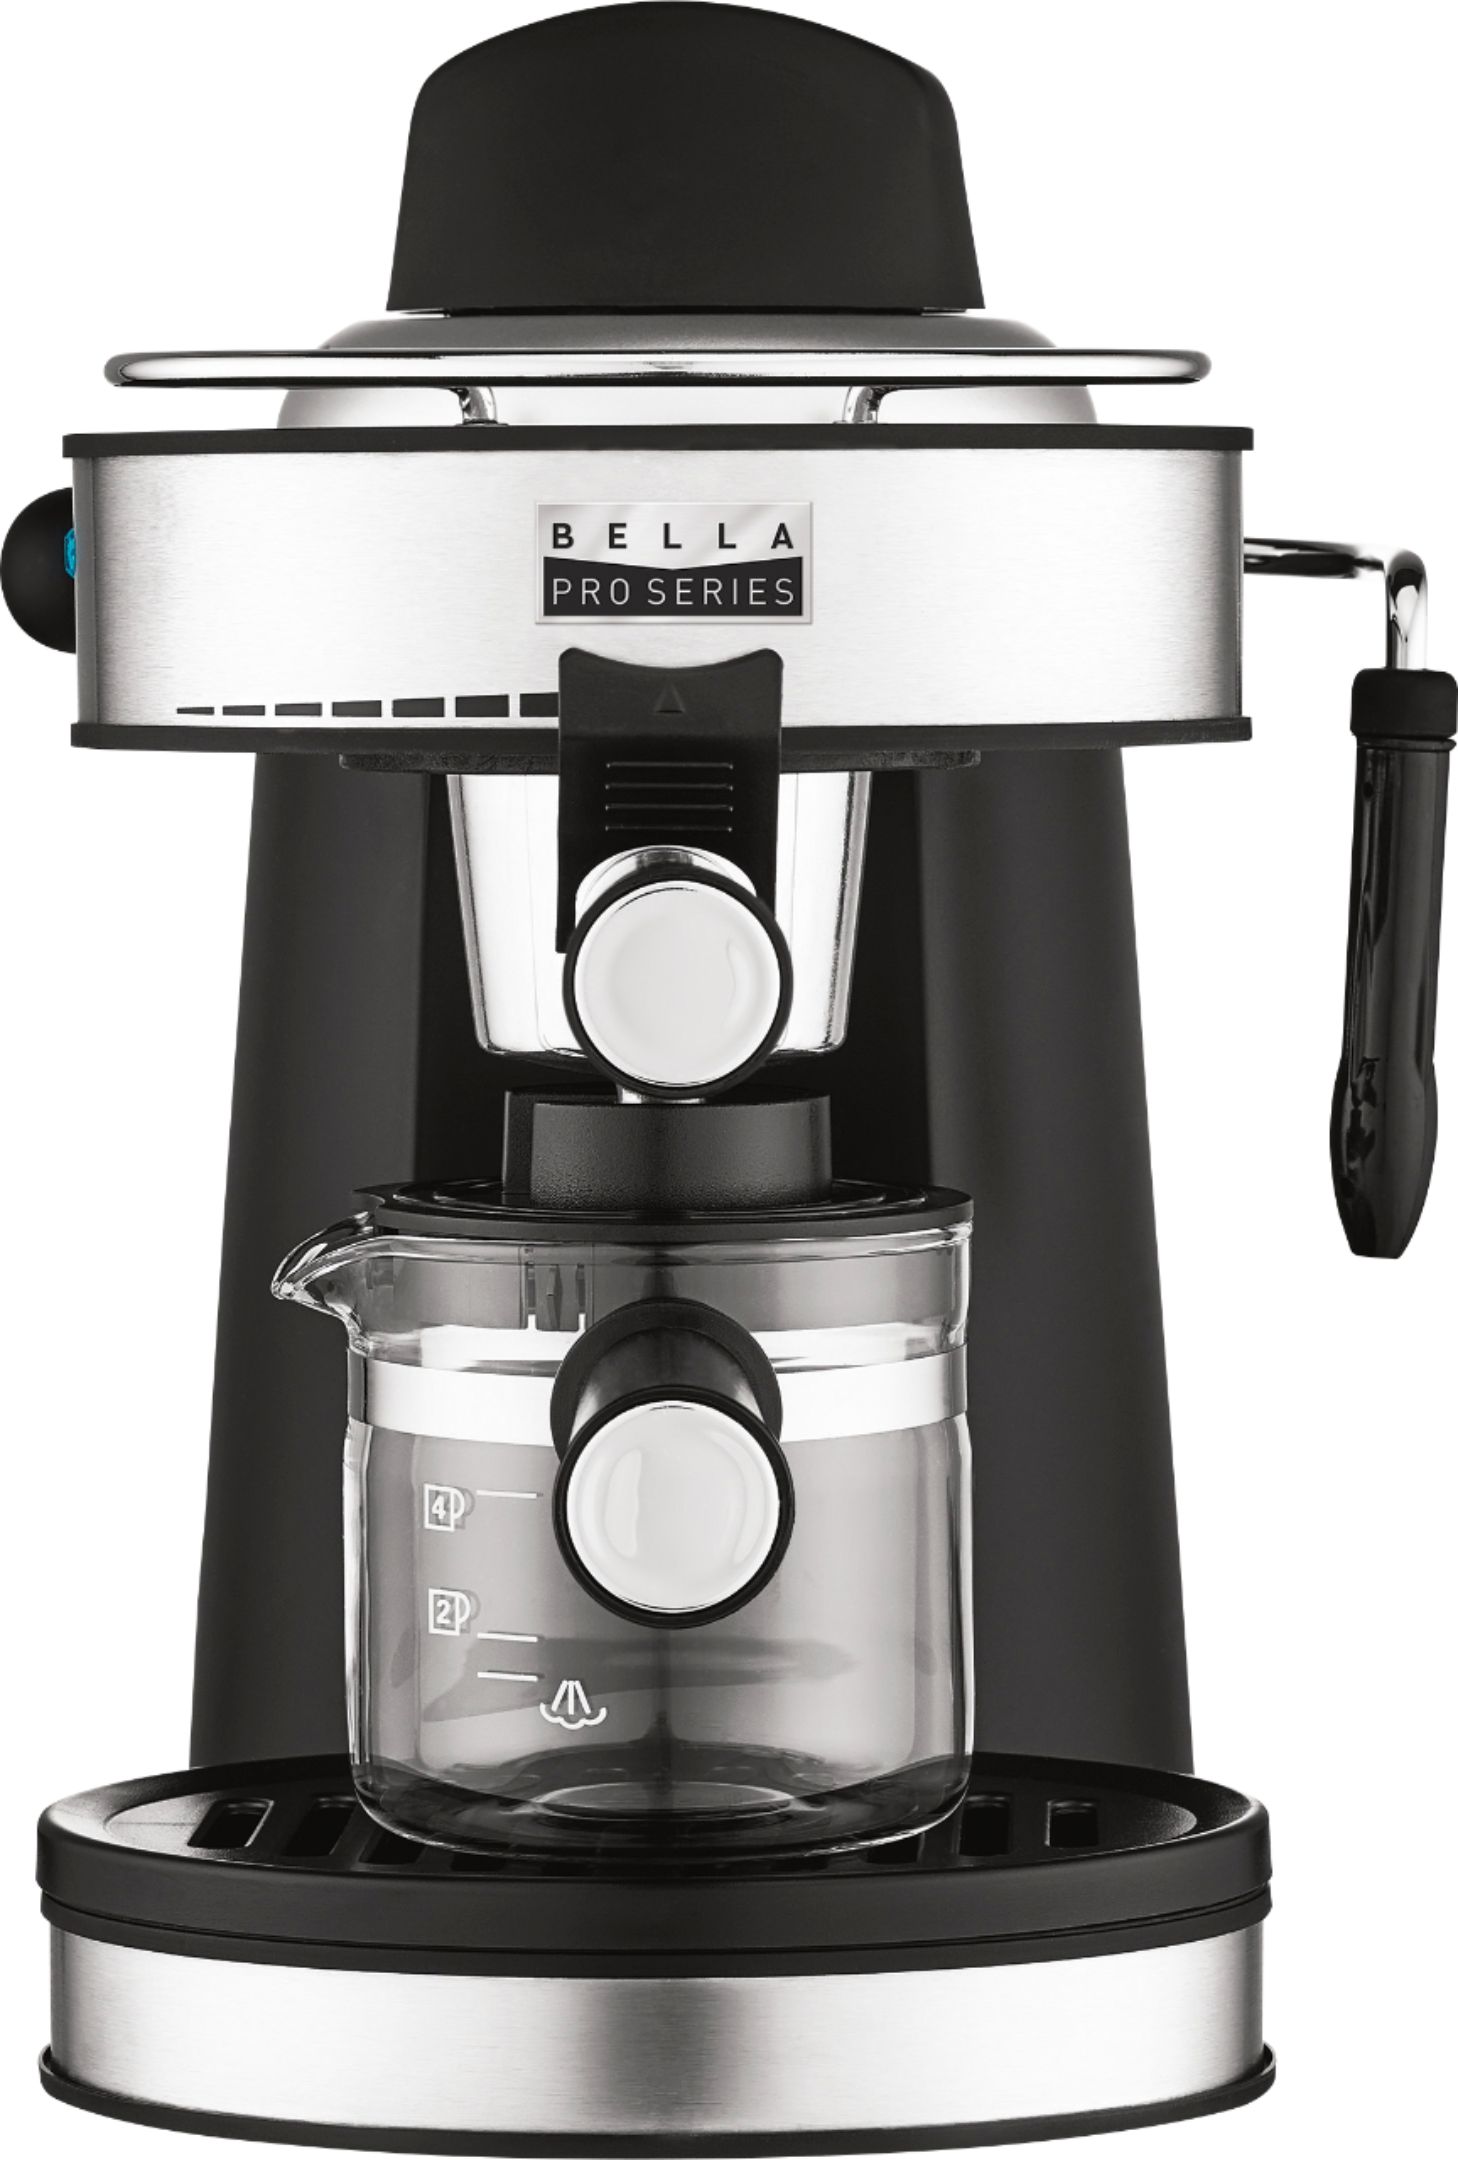 Bella - Pro Series Espresso Machine - Stainless Steel